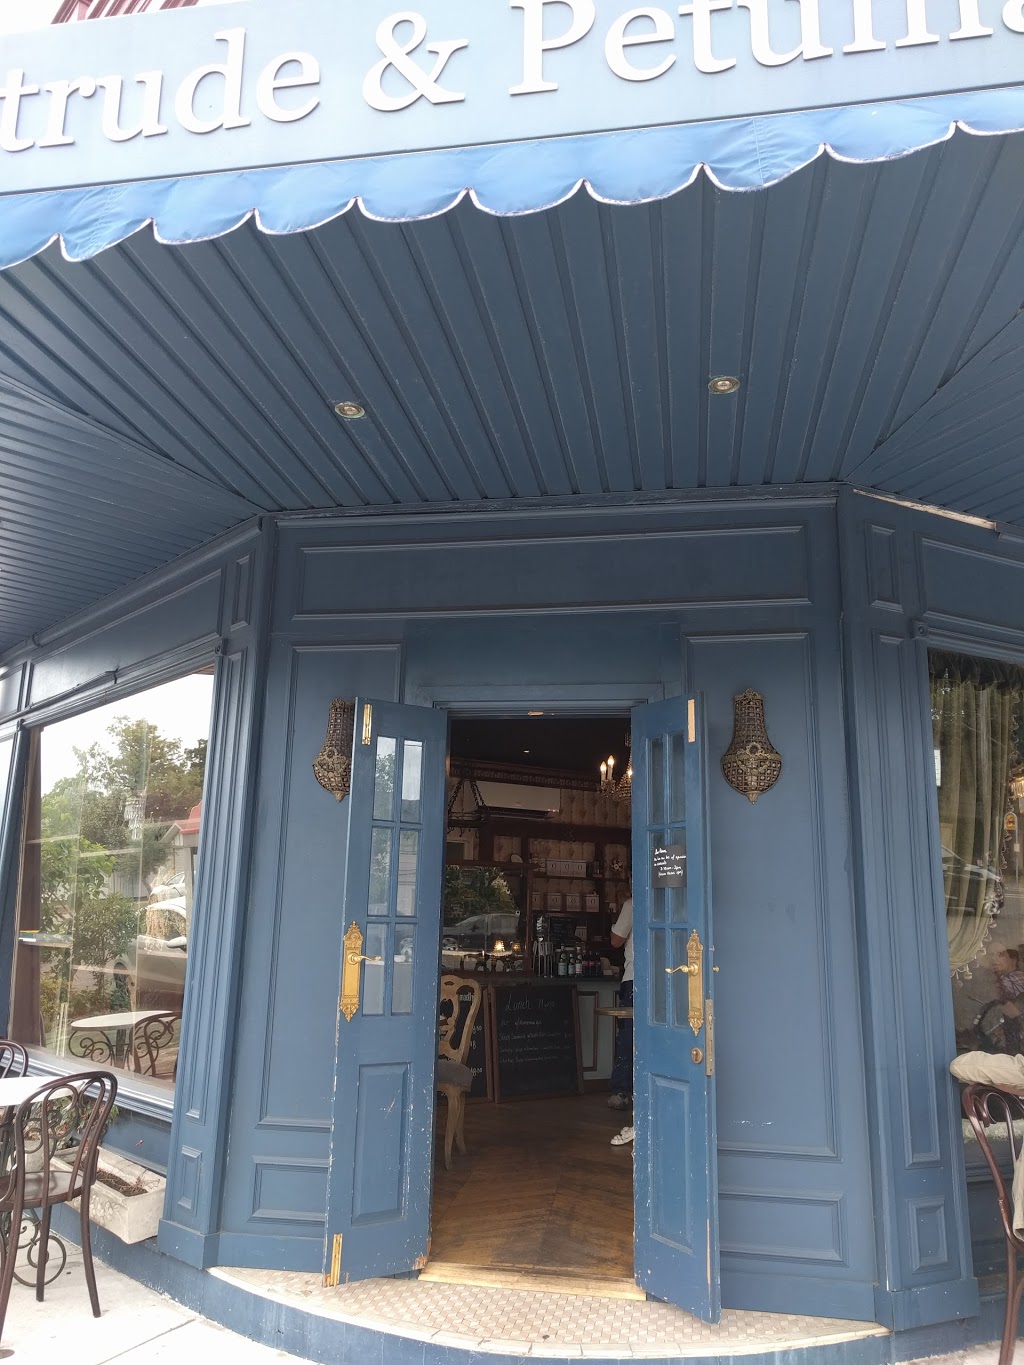 Gertrude & Petunias | cafe | 61 Todman Ave, Kensington NSW 2033, Australia